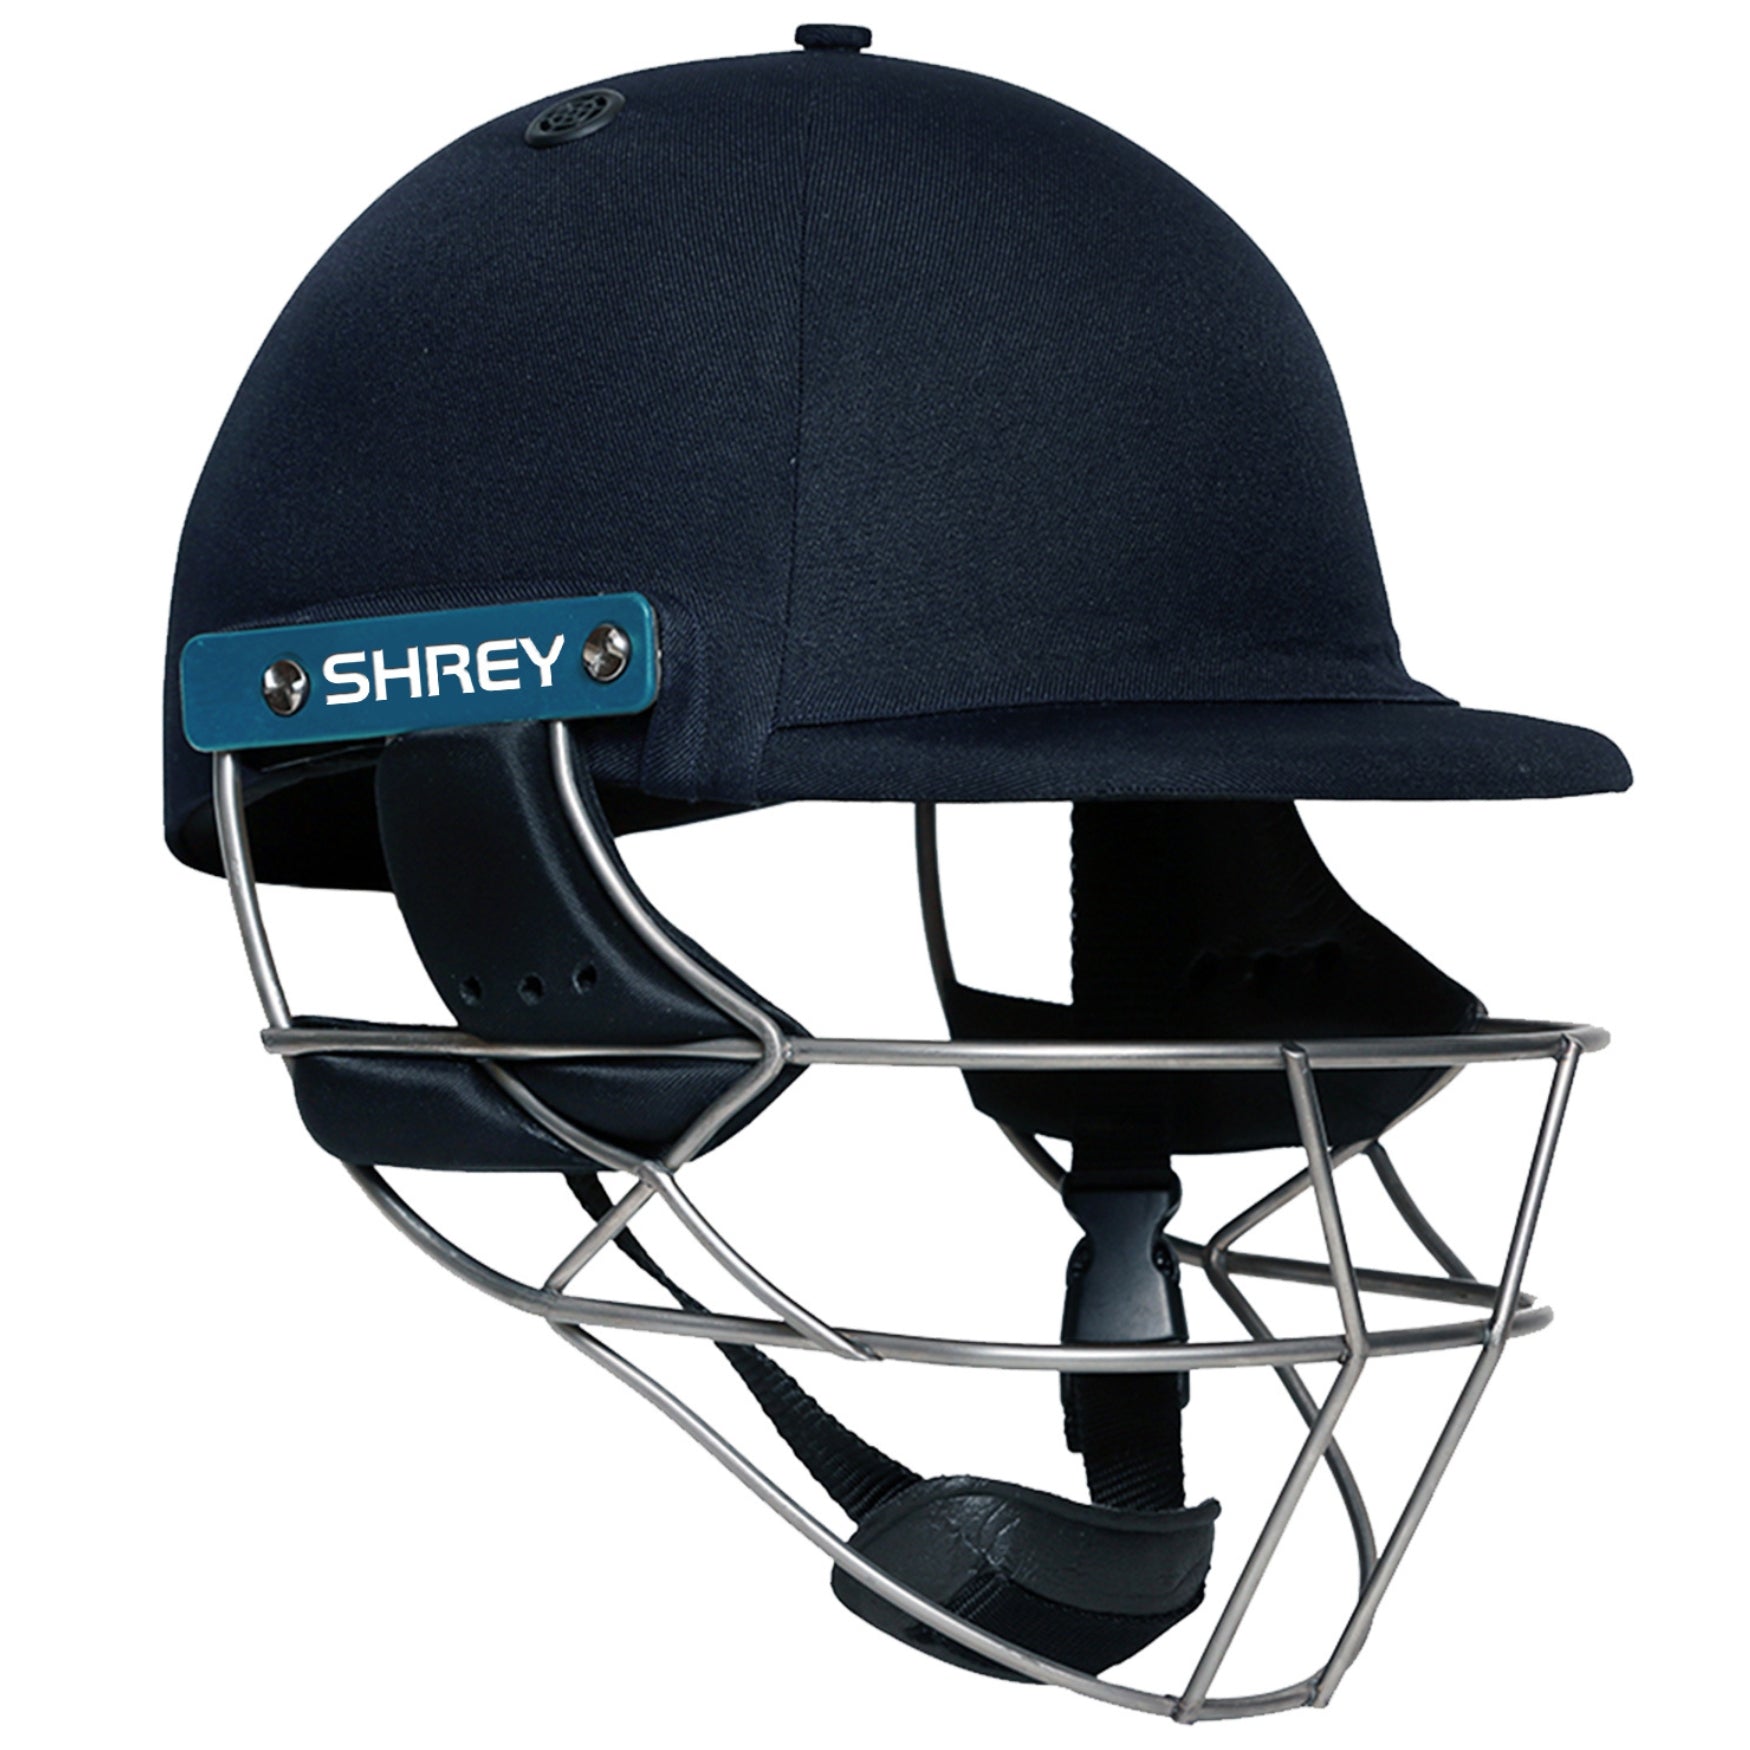 Shrey Cricket Helmet, Model Masterclass Match 2.0, Steel Grill, Navy Blue